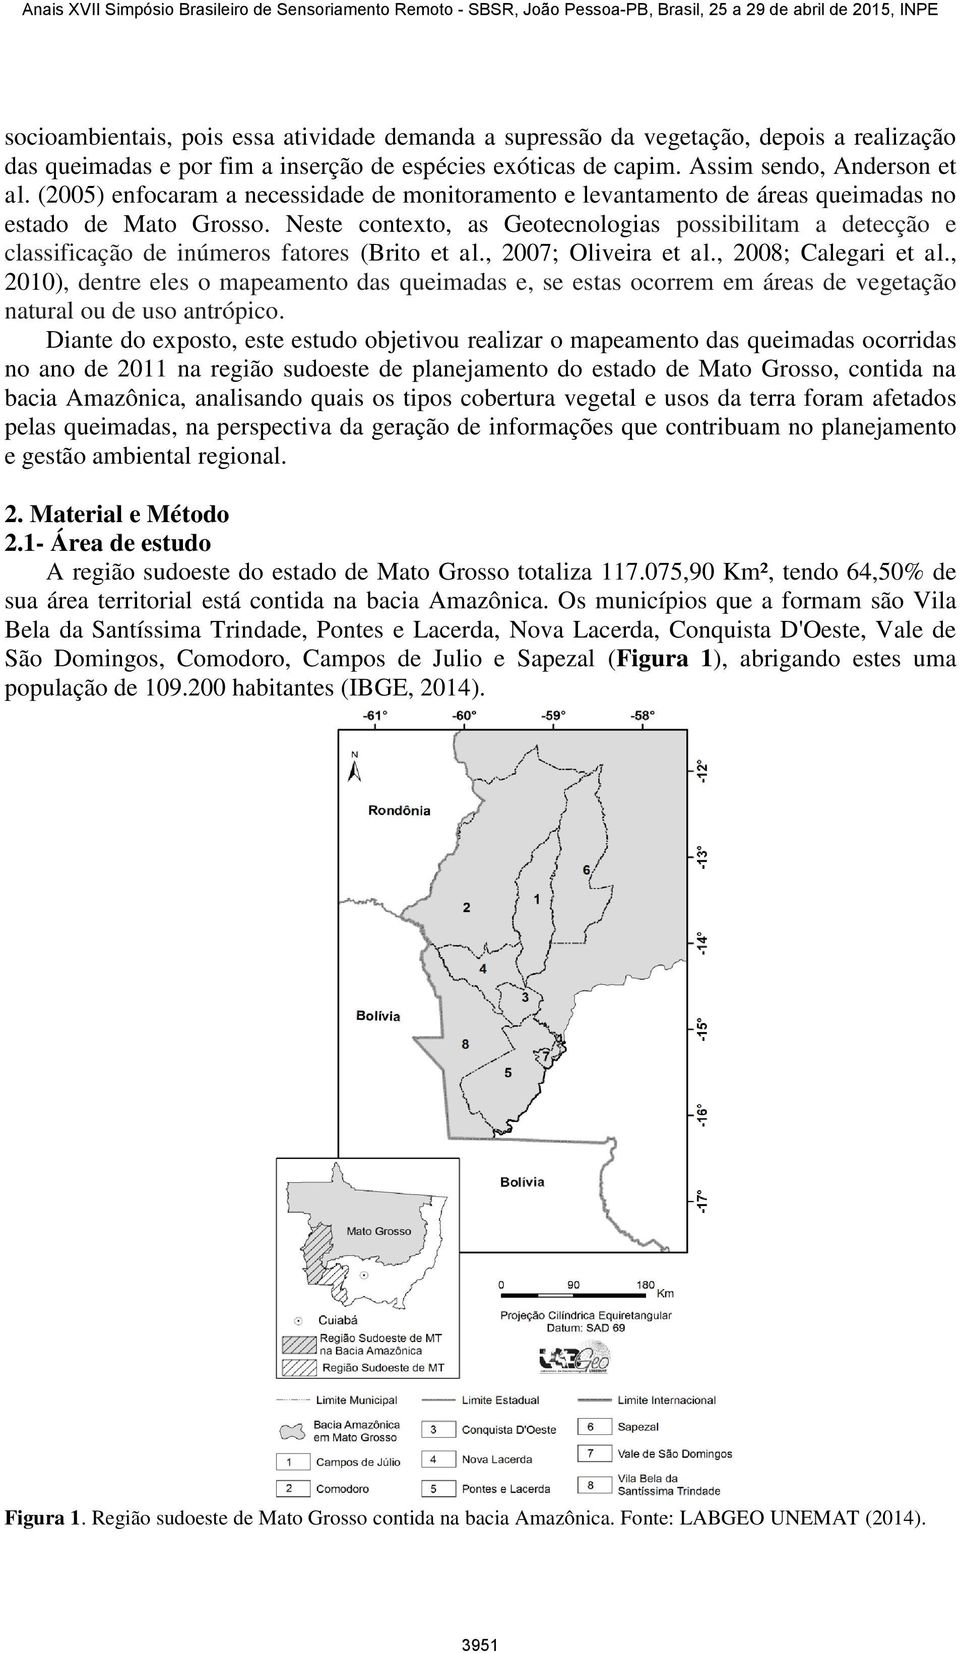 Neste contexto, as Geotecnologias possibilitam a detecção e classificação de inúmeros fatores (Brito et al., 2007; Oliveira et al., 2008; Calegari et al.